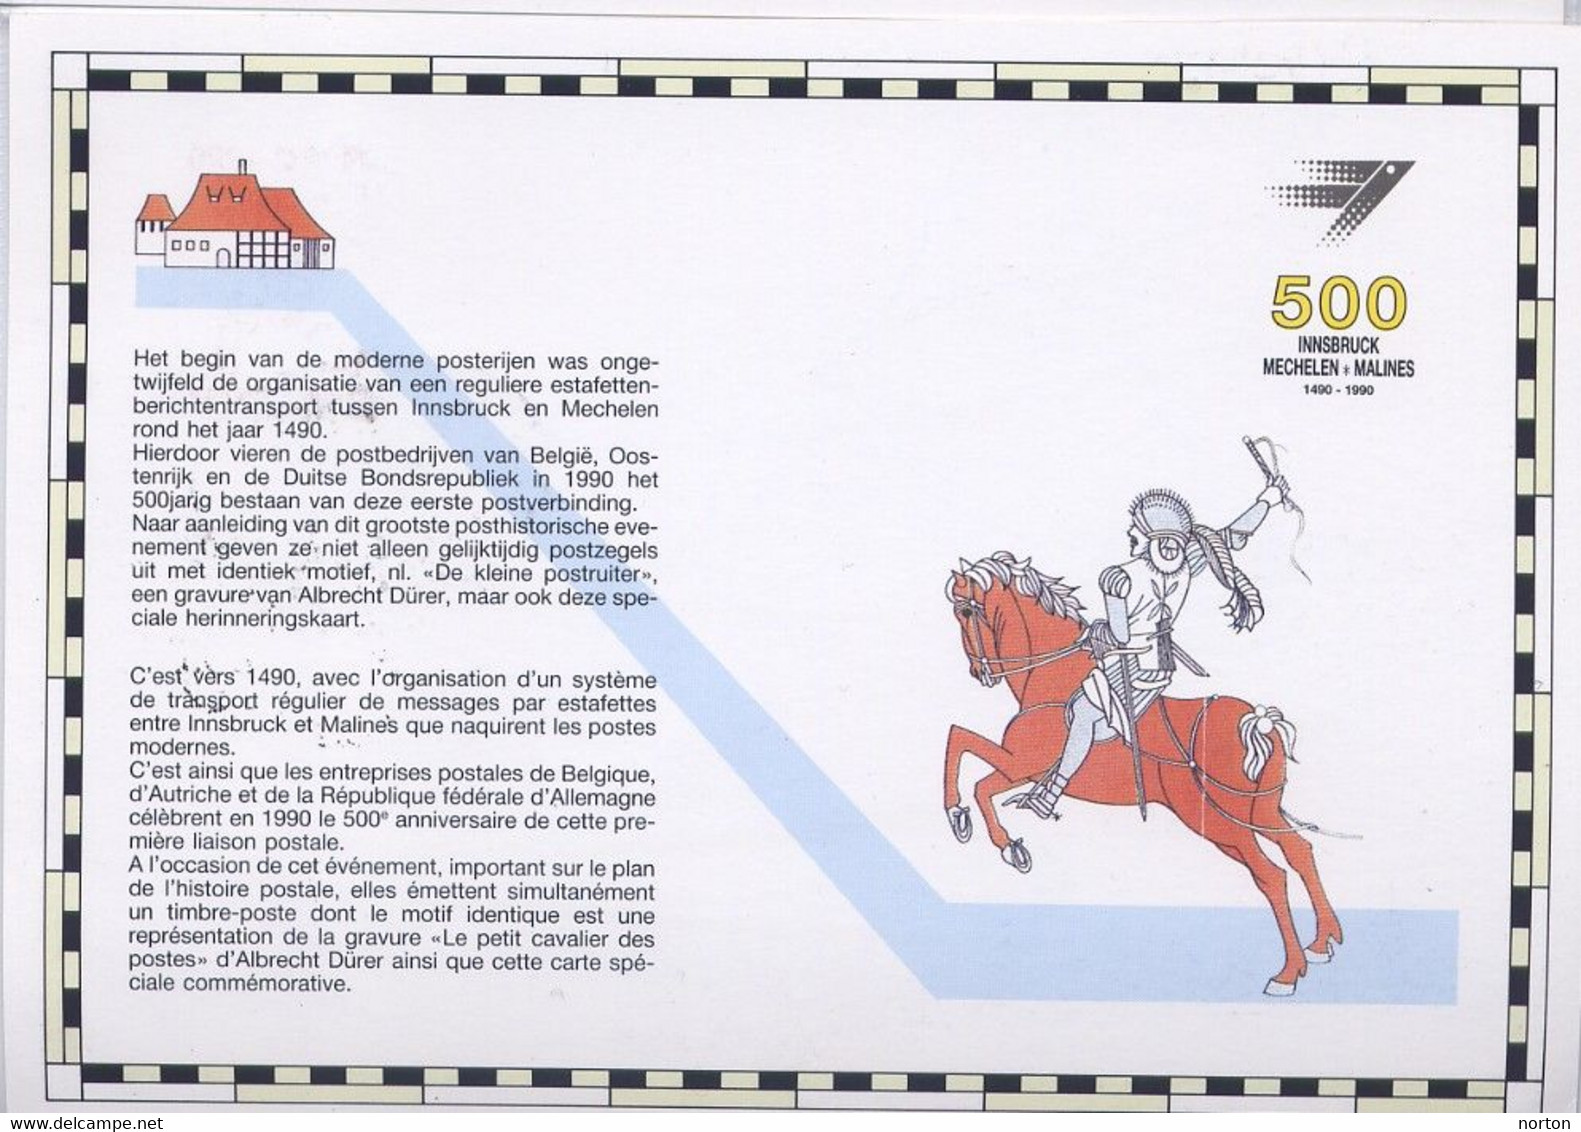 2350 CS Carte Souvenir Liaison Postale Européenne - Souvenir Cards - Joint Issues [HK]